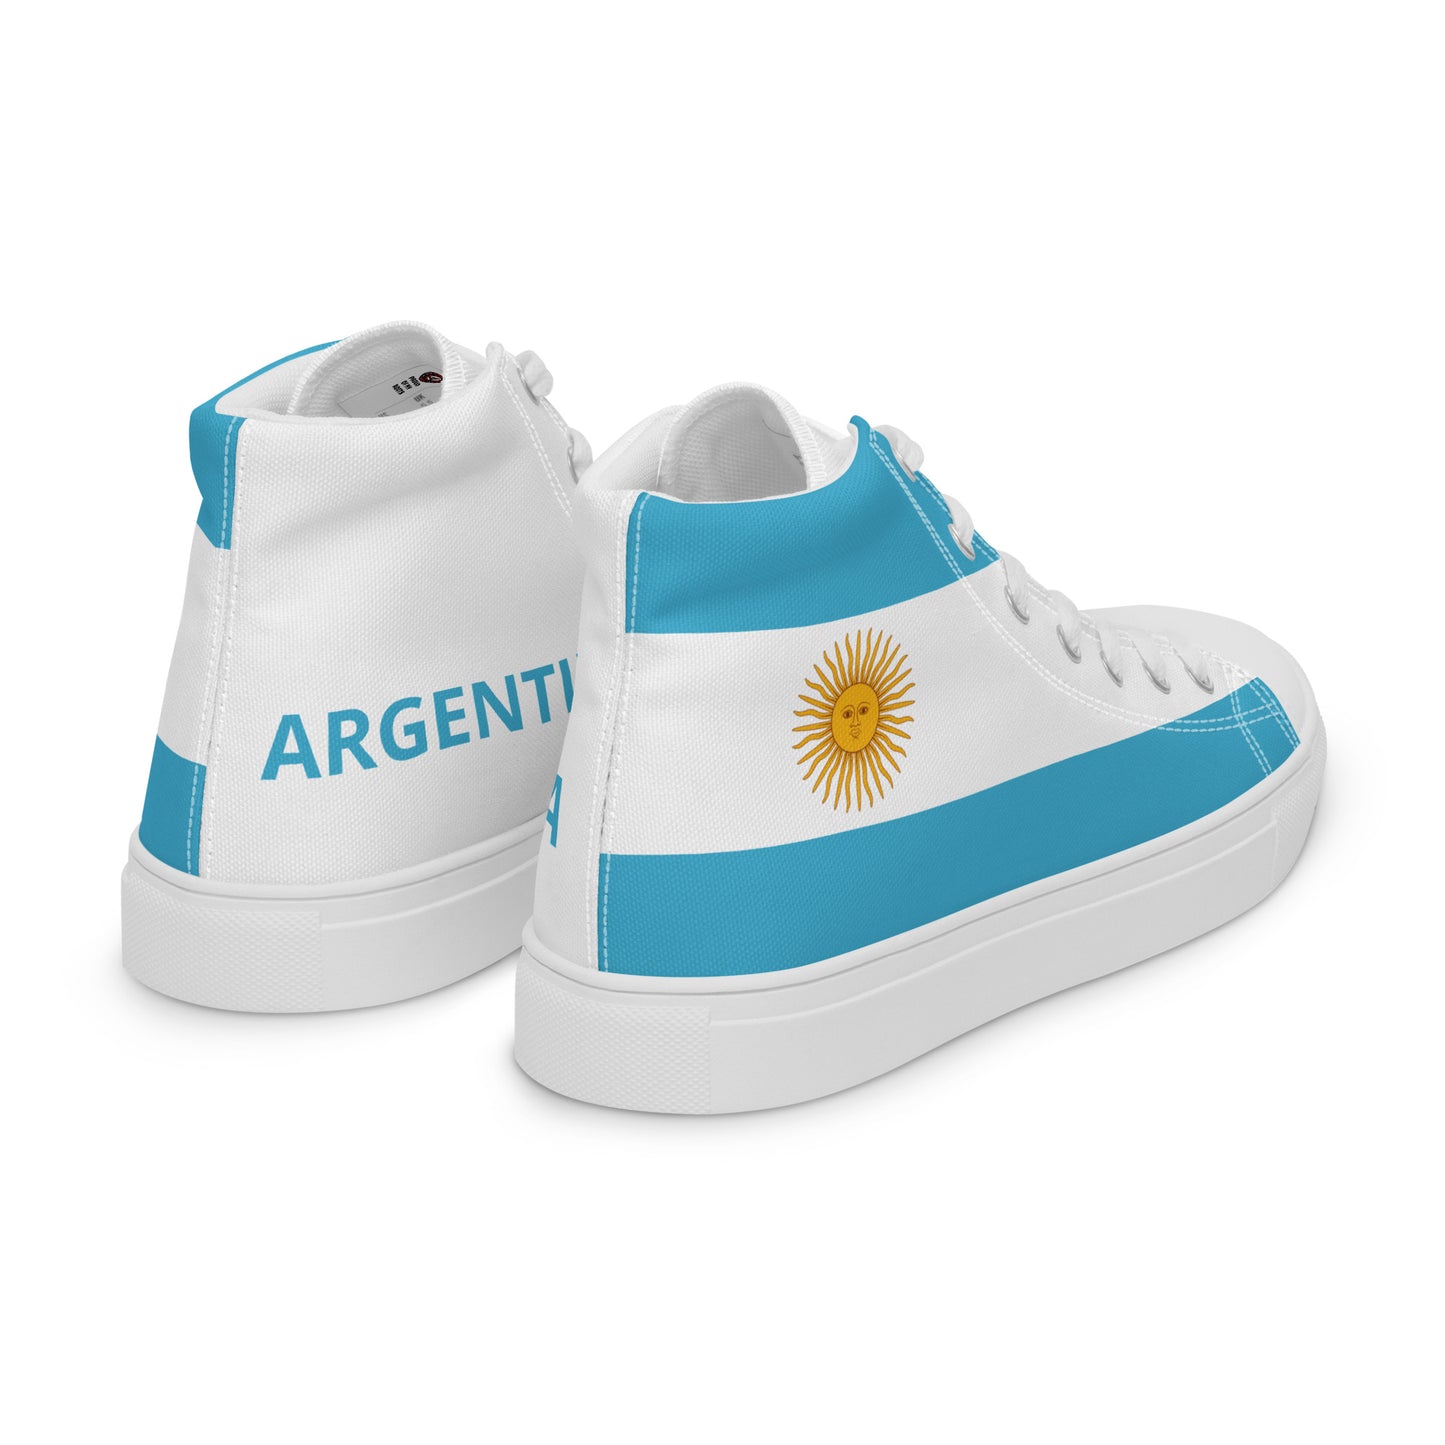 Argentina - Men - Bandera - High top shoes